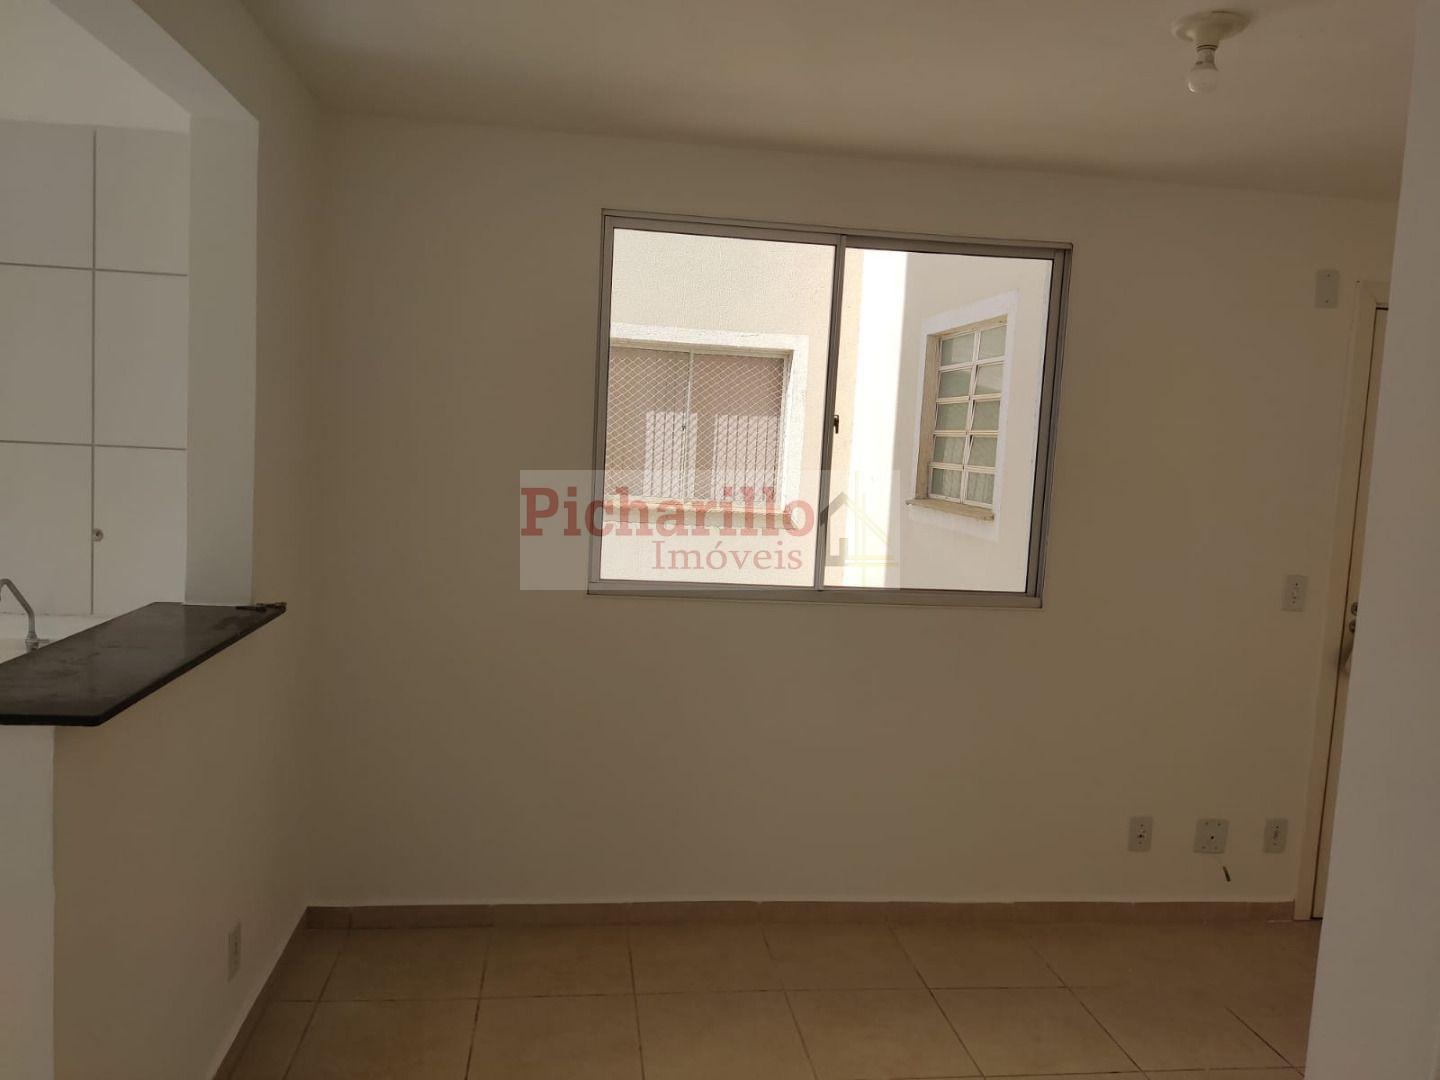 Apartamento no Distrito Industrial Miguel Abdelnur com 2 dormitórios à venda, 42 m²  de área útil